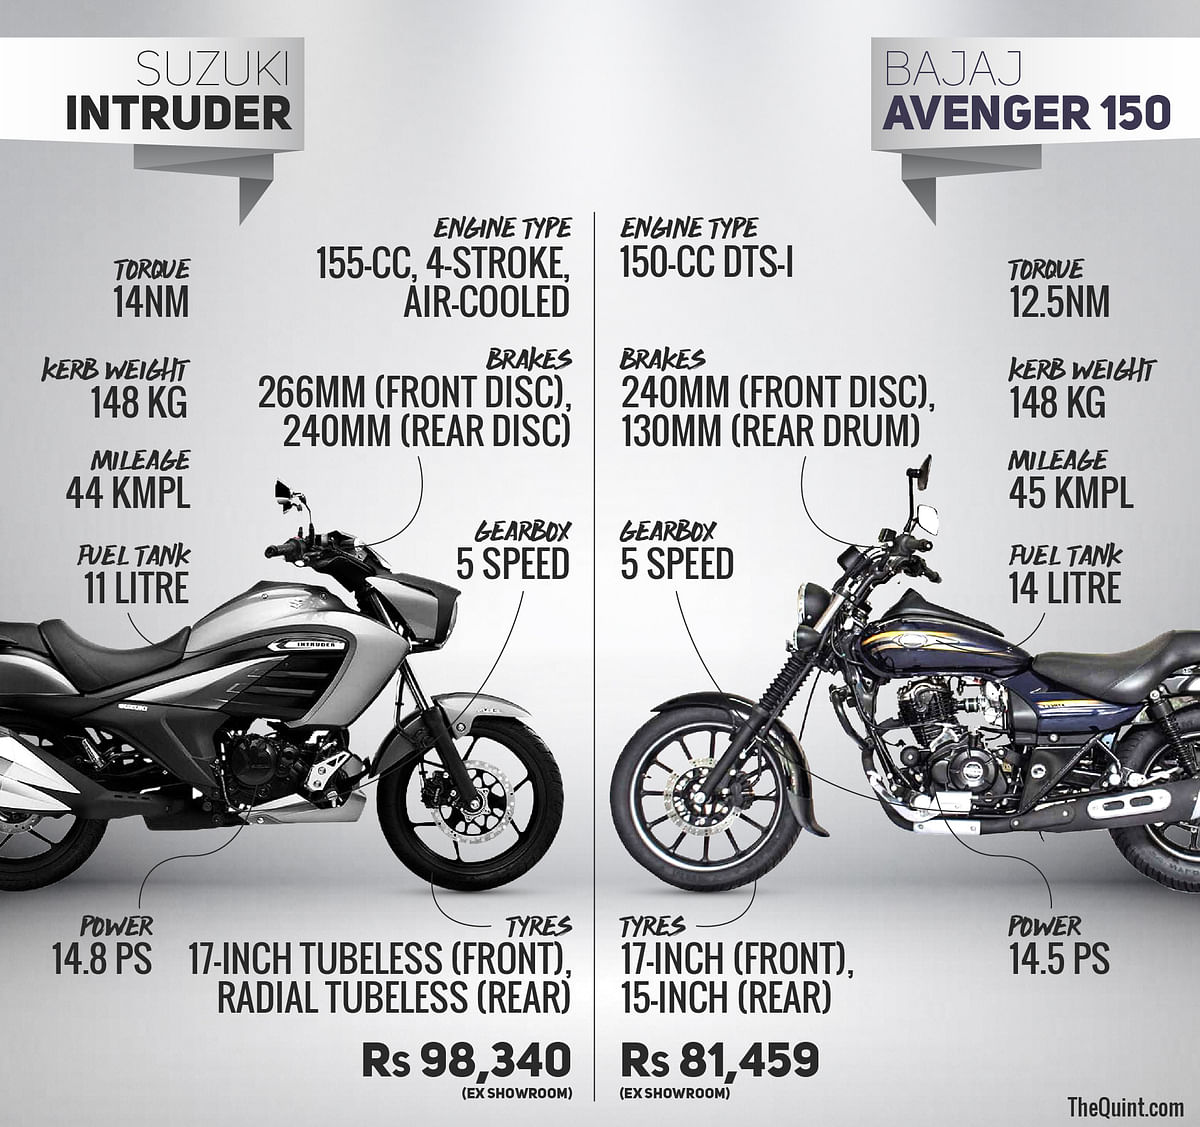 Bajaj Avenger & Suzuki Intruder – The 150 cc Cruiser Showdown